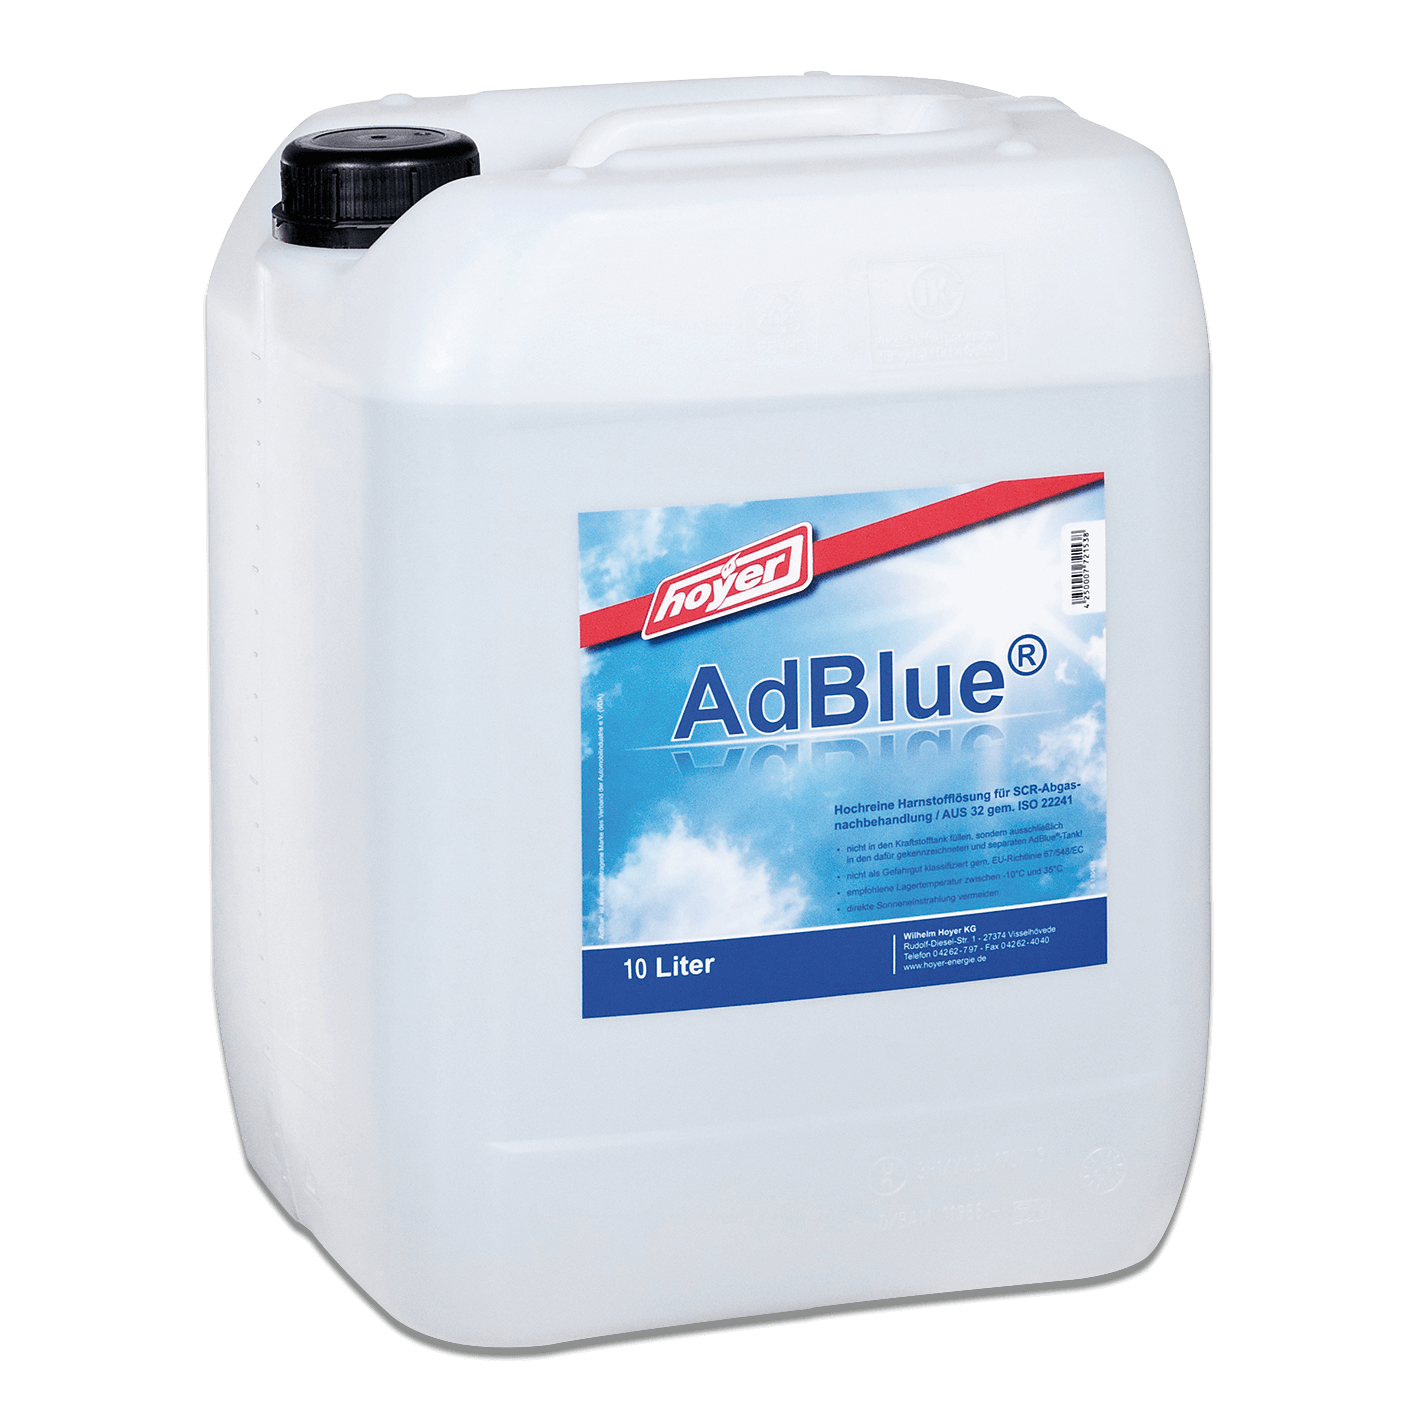 Online AdBlue -20L - Kanister